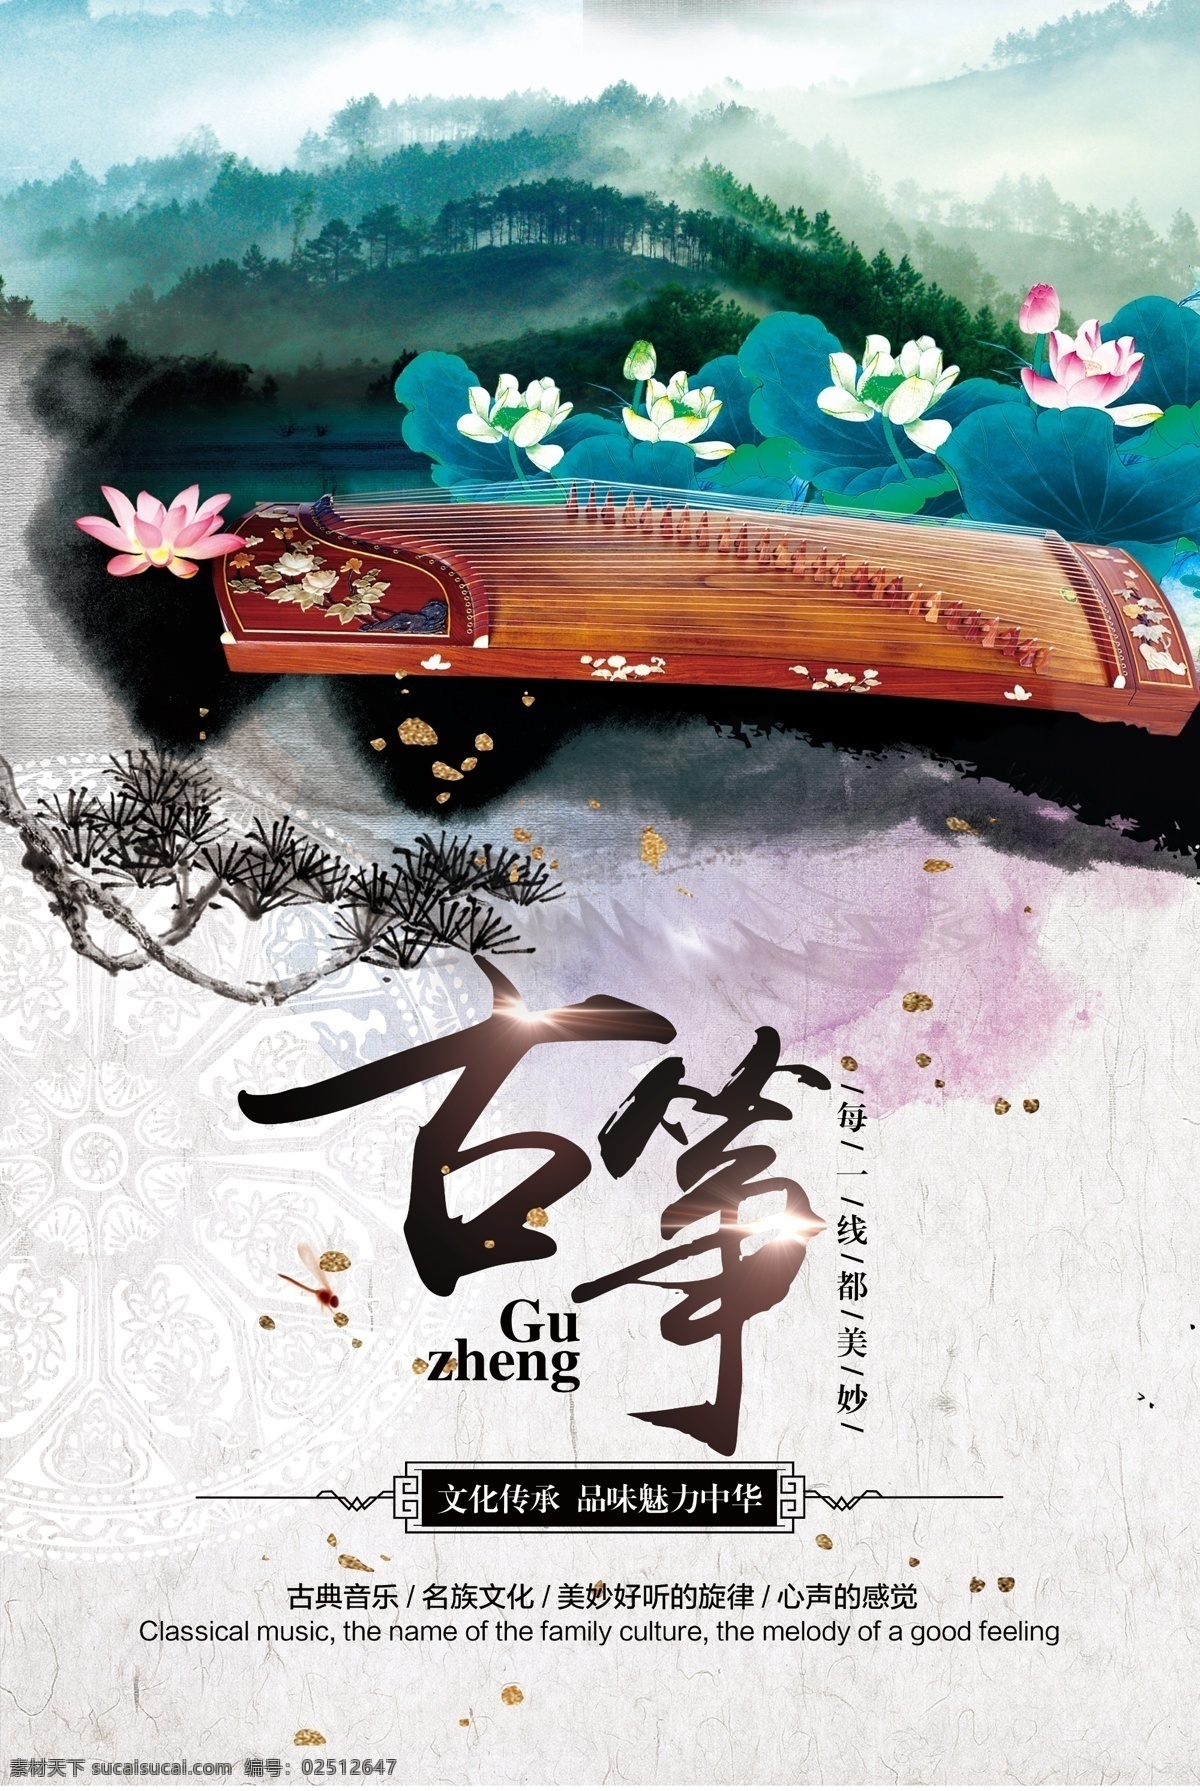 古筝海报 中国风 彩色 水墨 古筝 海报 模板 艺术 文化艺术 舞蹈音乐